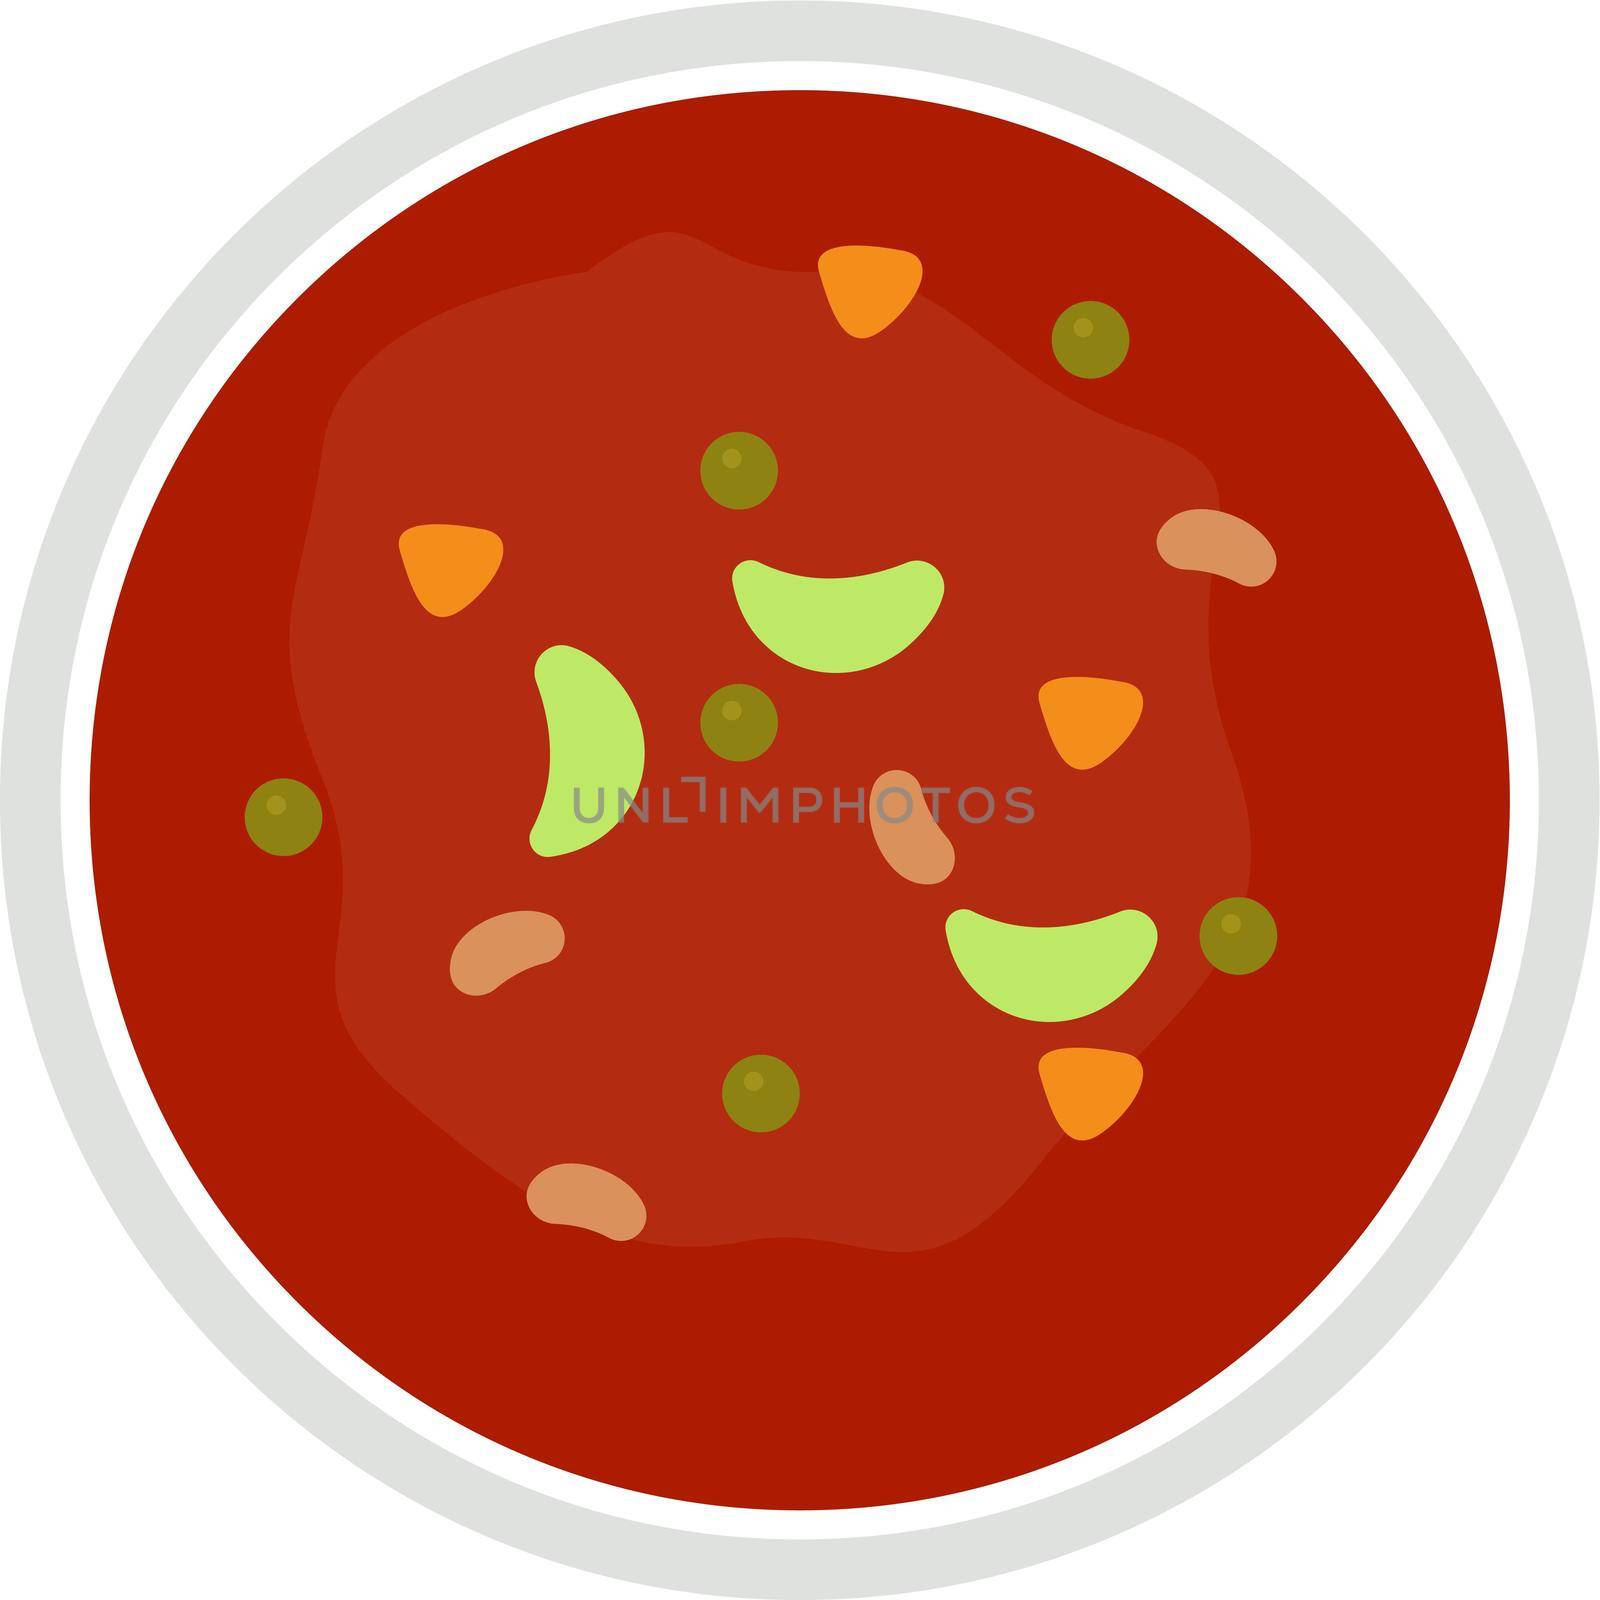 Vegan soup, illustration, vector on white background. by Morphart